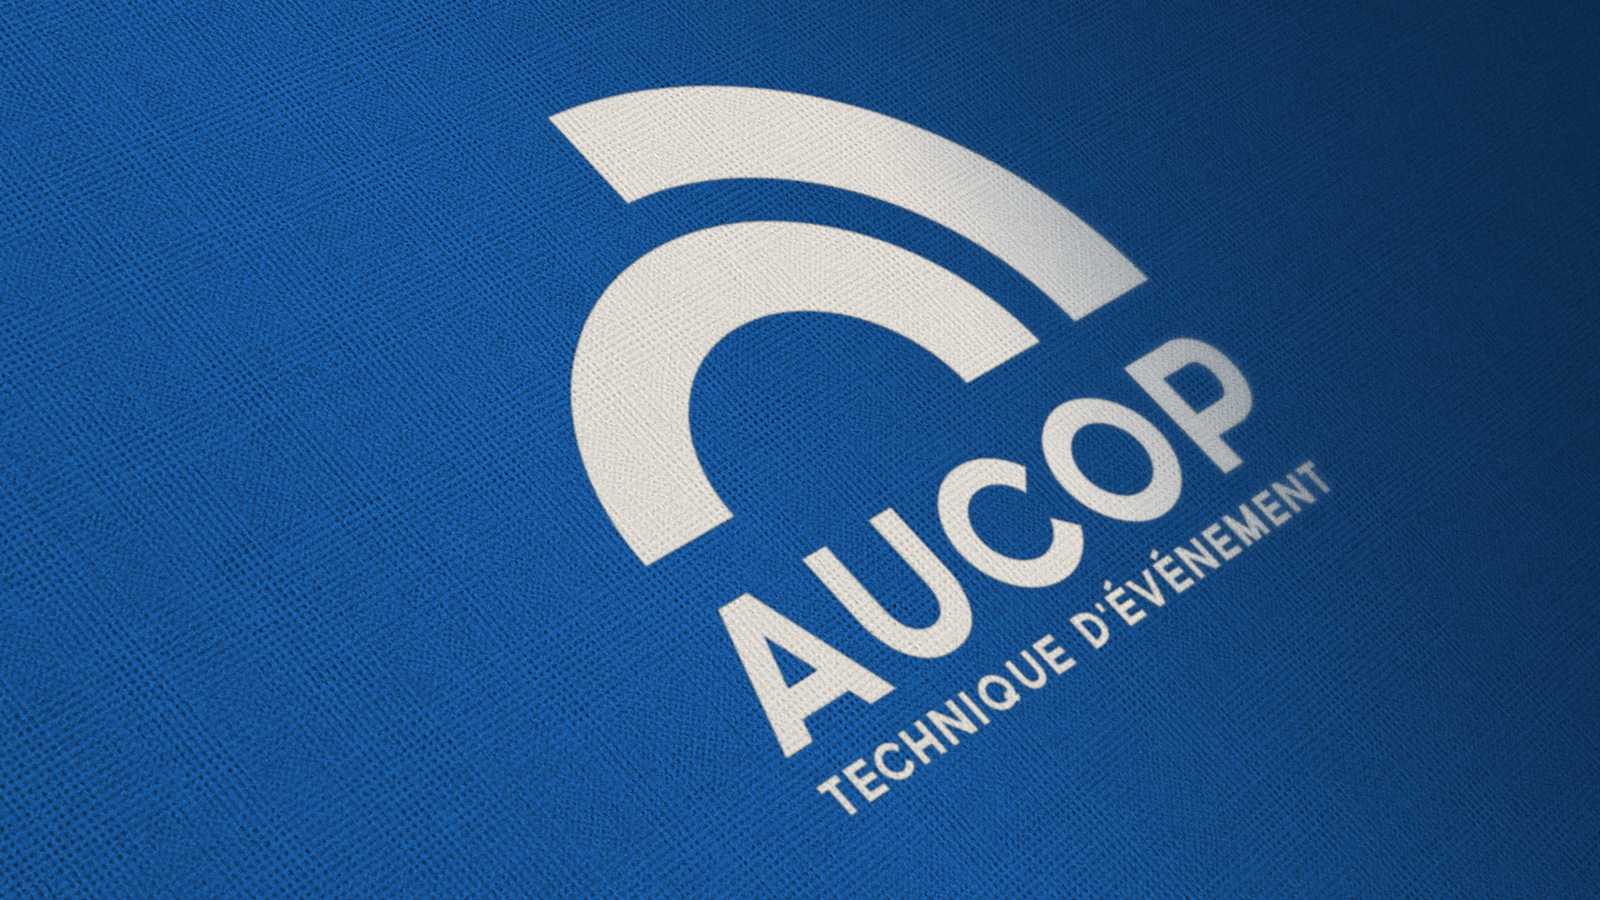 Aucop-01.jpg